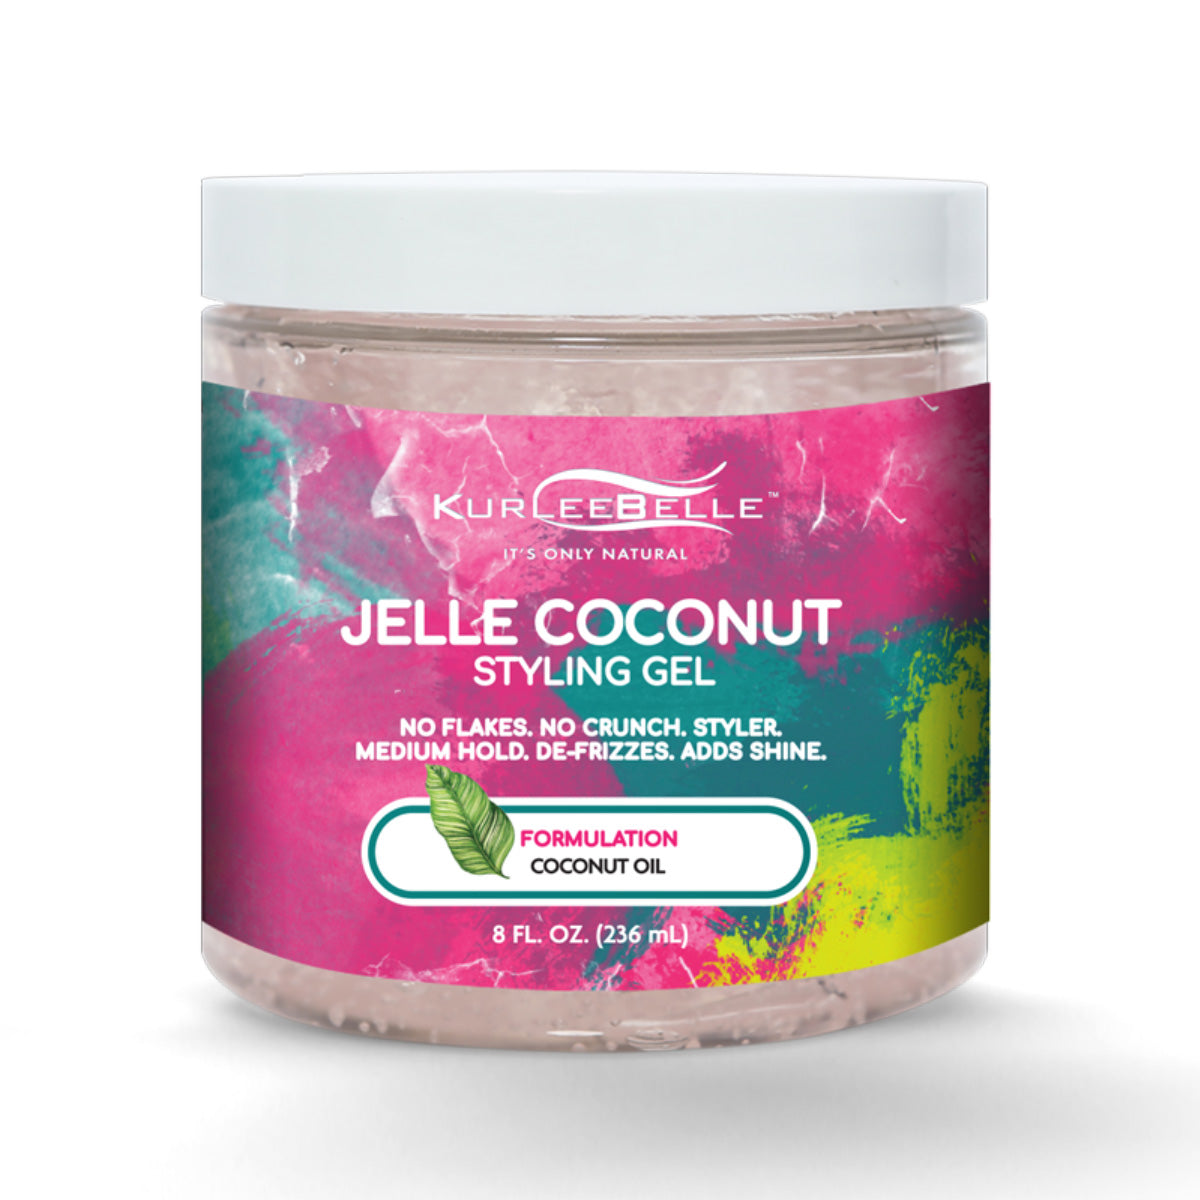 Fabriqué à partir d'Huile de Coco pure, le Jelle Coconut Styling Gel offre de la brillance à votre chevelure. Cette gelée coiffante sculpte et définit parfaitement vos boucles. Résultat ? Vos boucles sont naturelles, sans effet collant ni résidus.